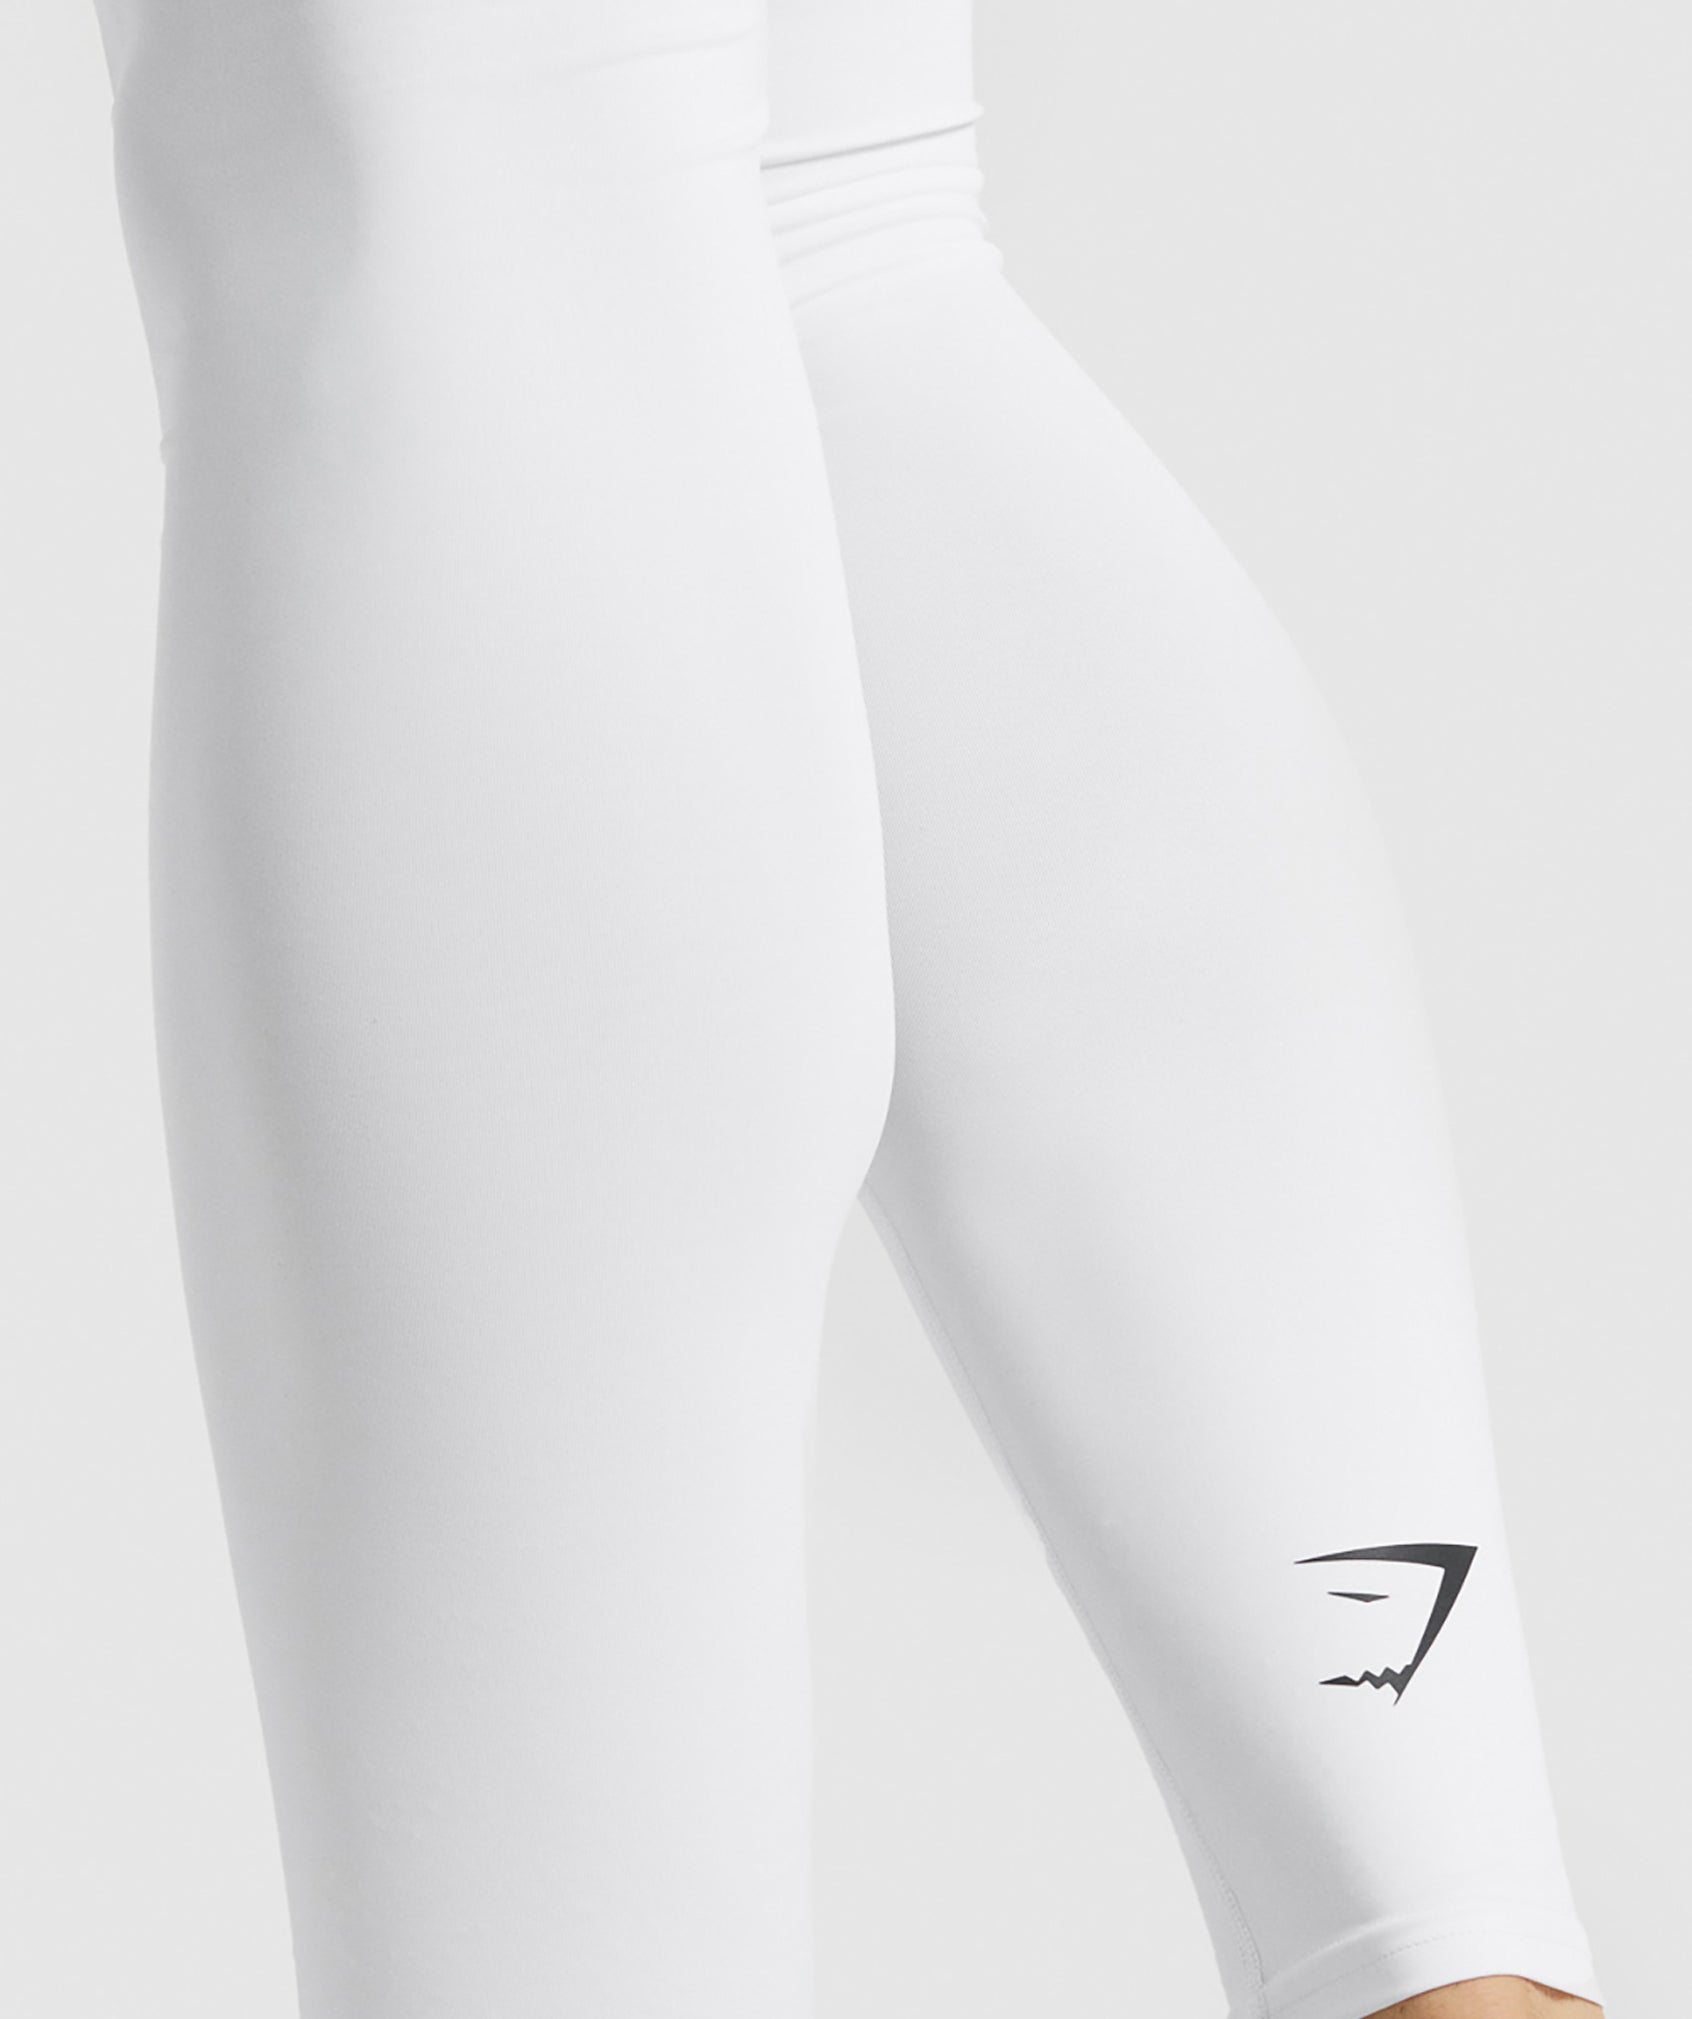 Calça Legging Feminina Cadarço Branca Tecido Canelado - Ava Fitness